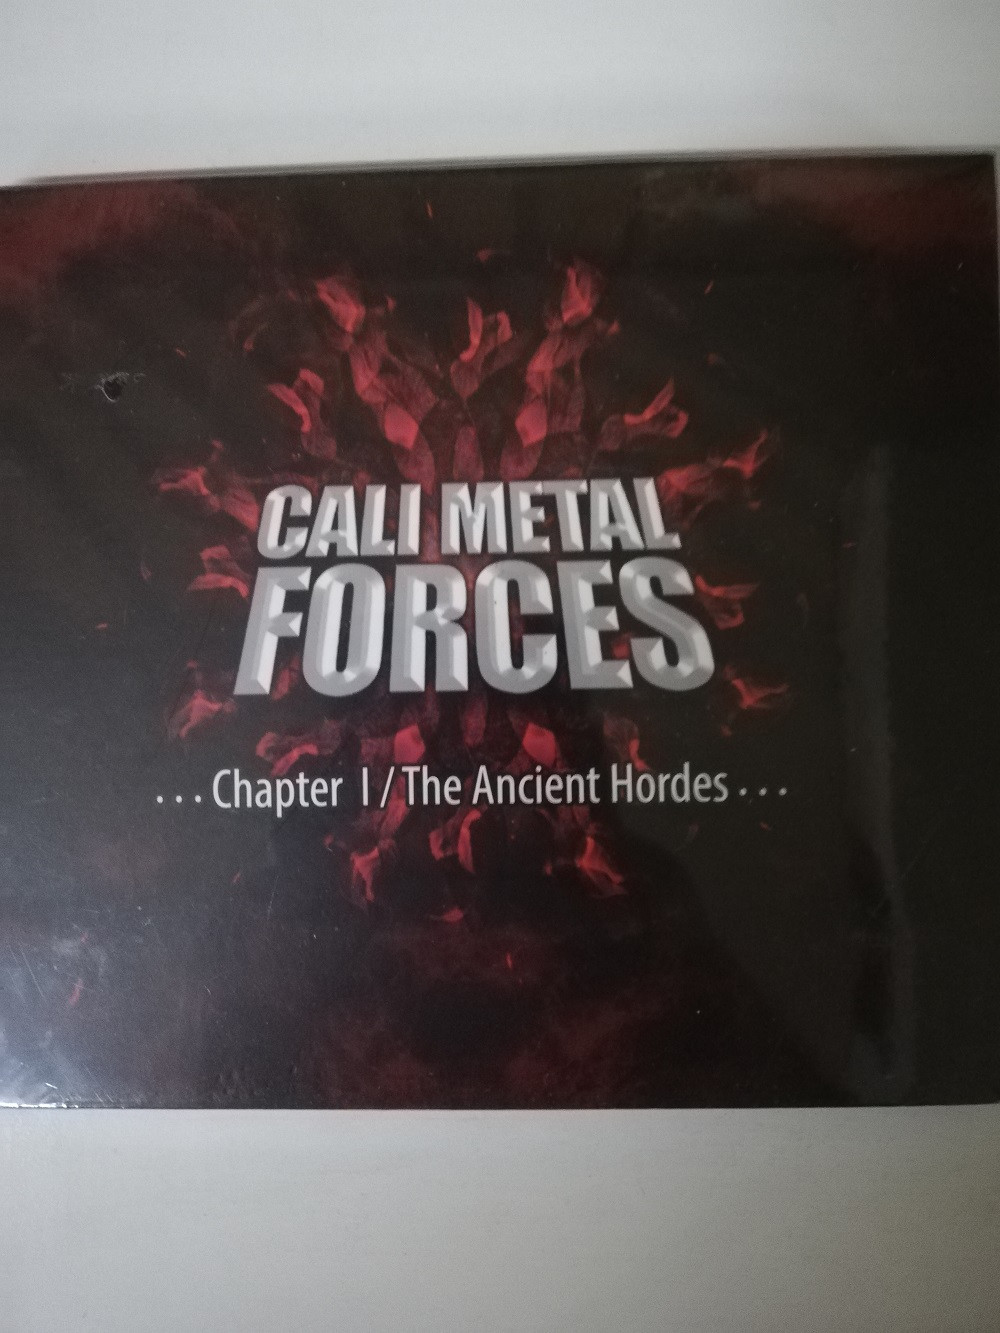 Imagen CD CALI METAL FORCES - CHAPTER I / THE ANCIENT HORDES...